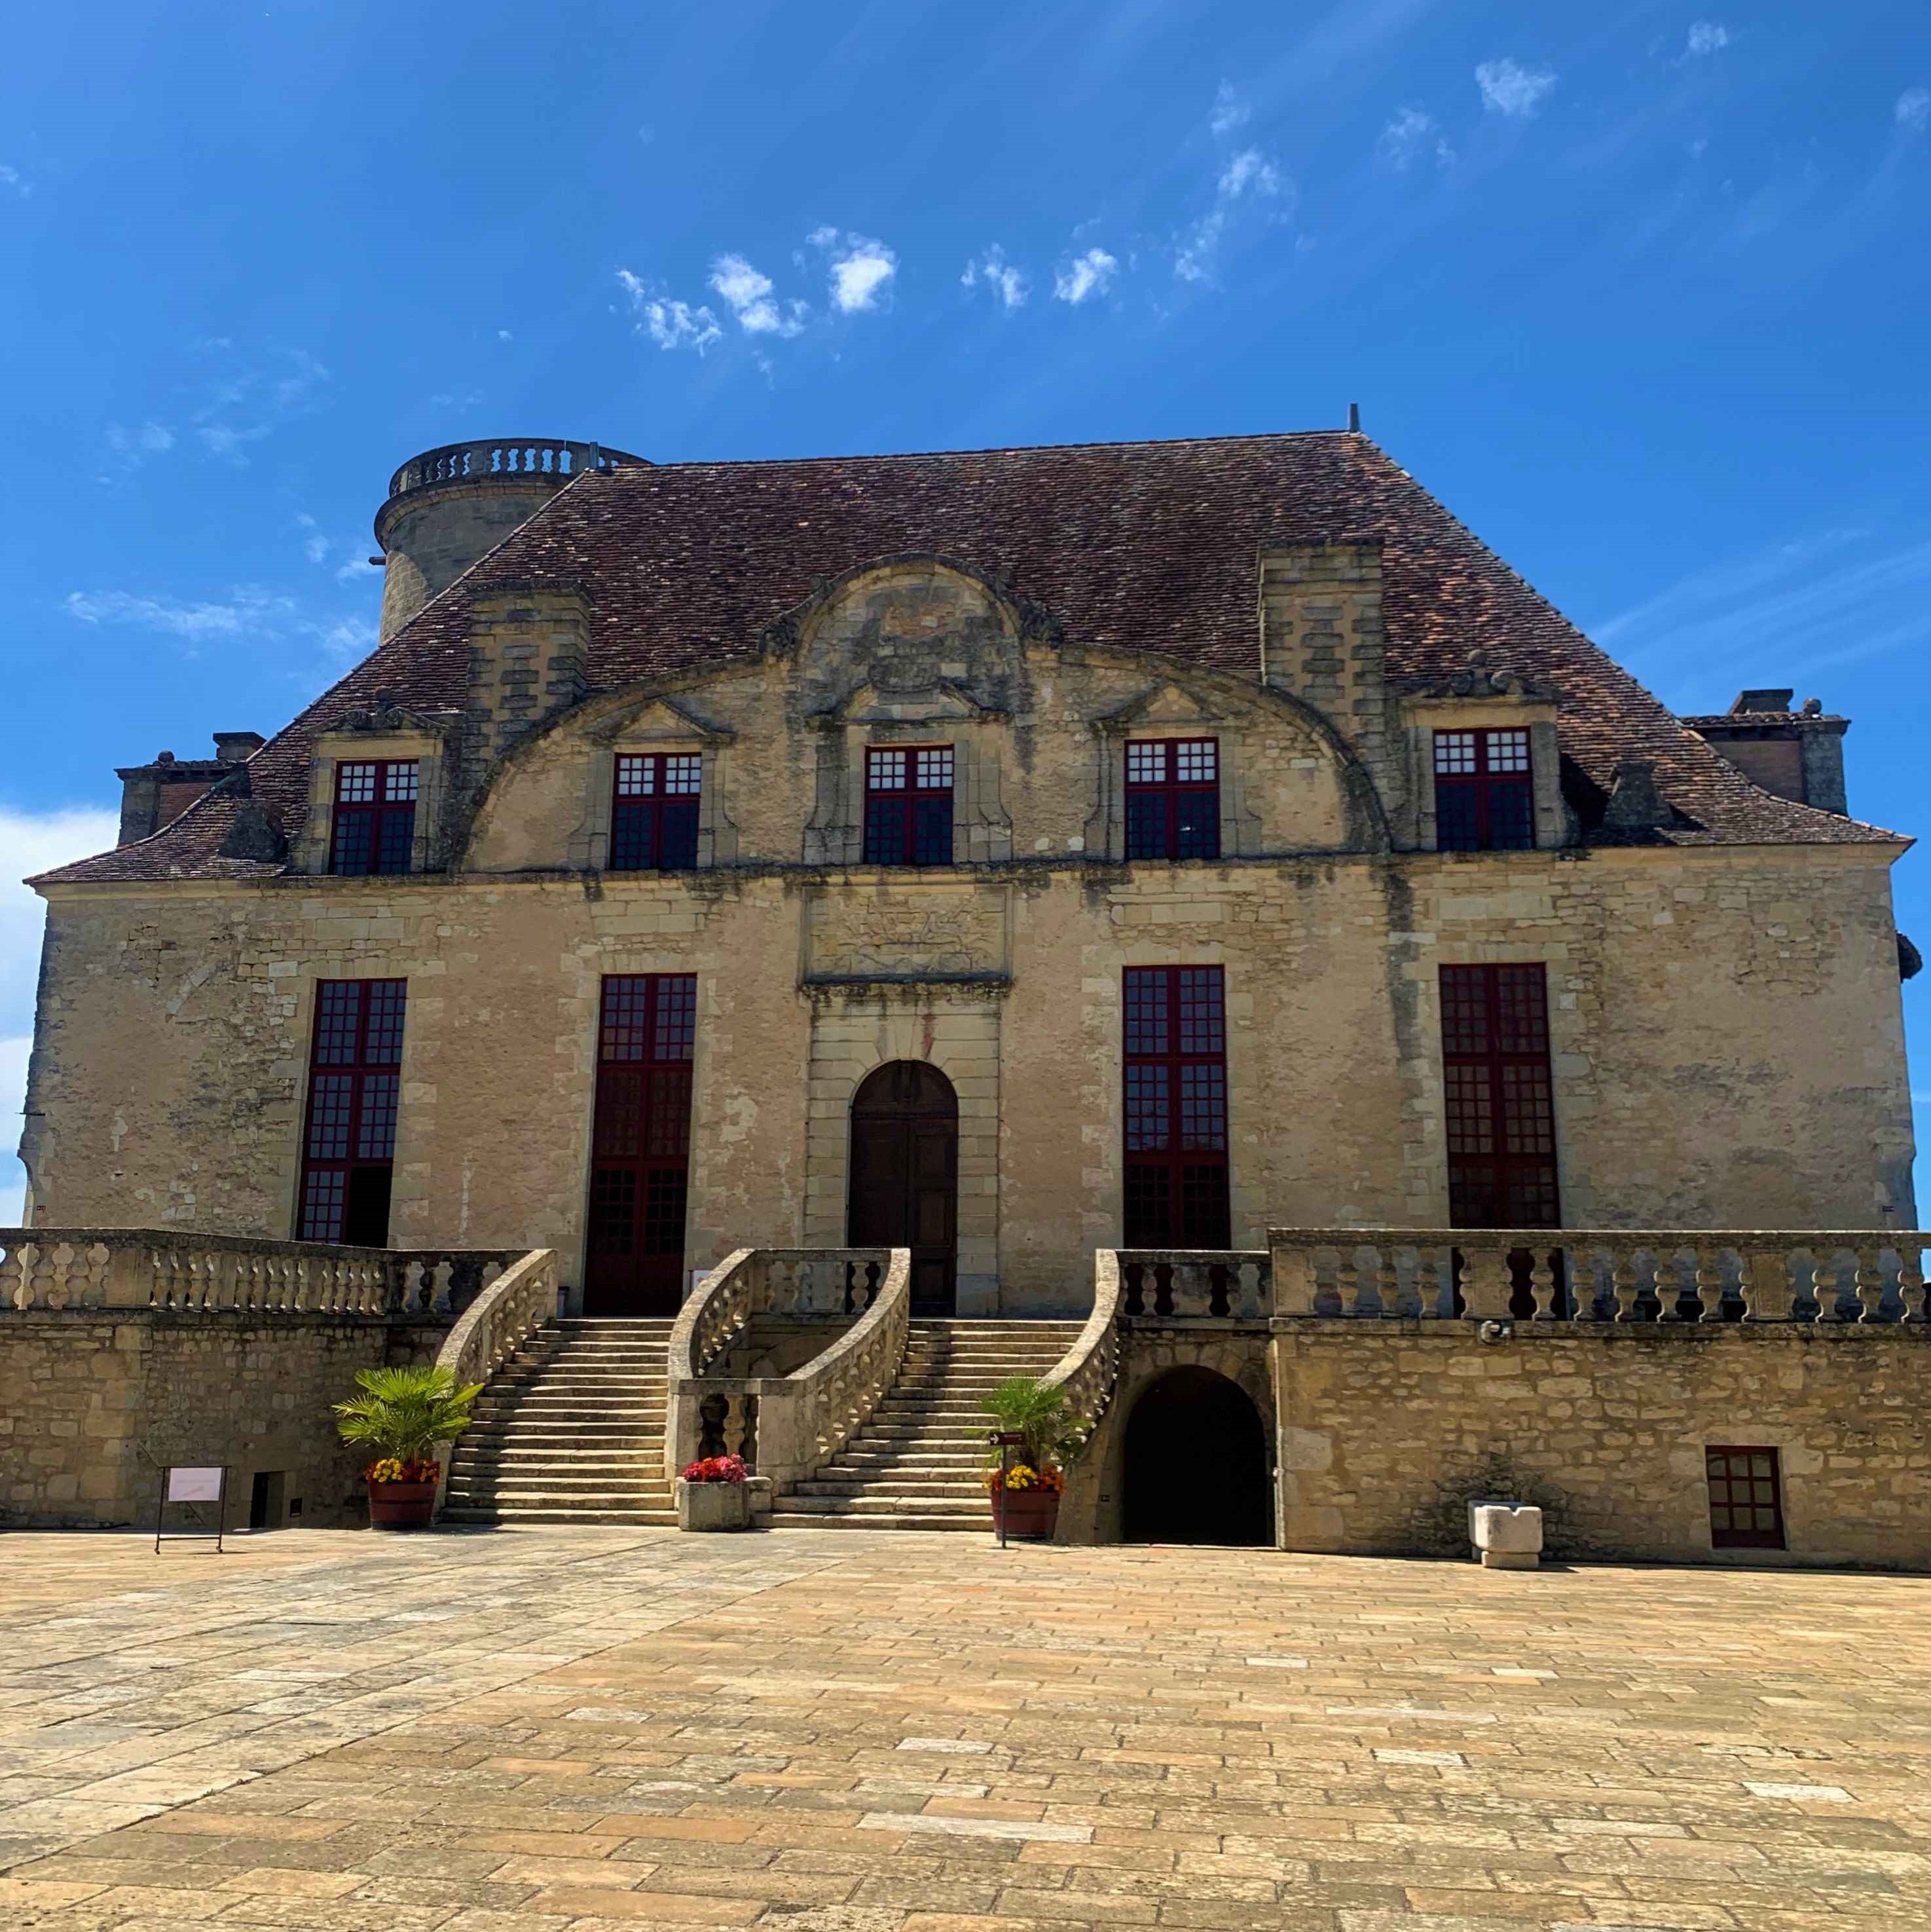 Visite Château en mode Covid-19